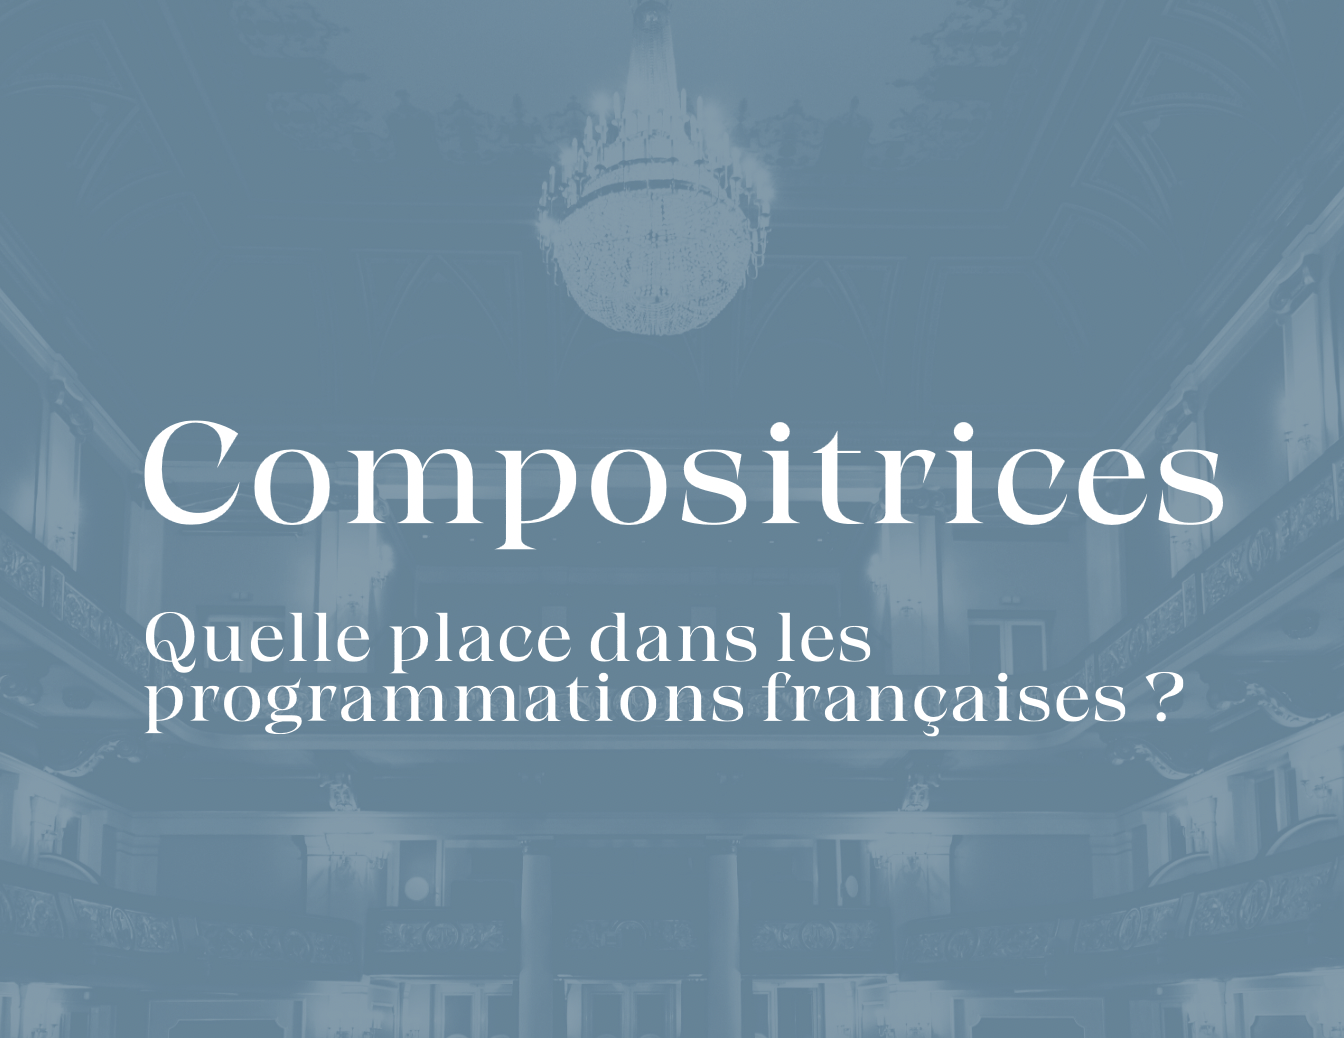 Compositrices : quelle place dans les programmations françaises ?